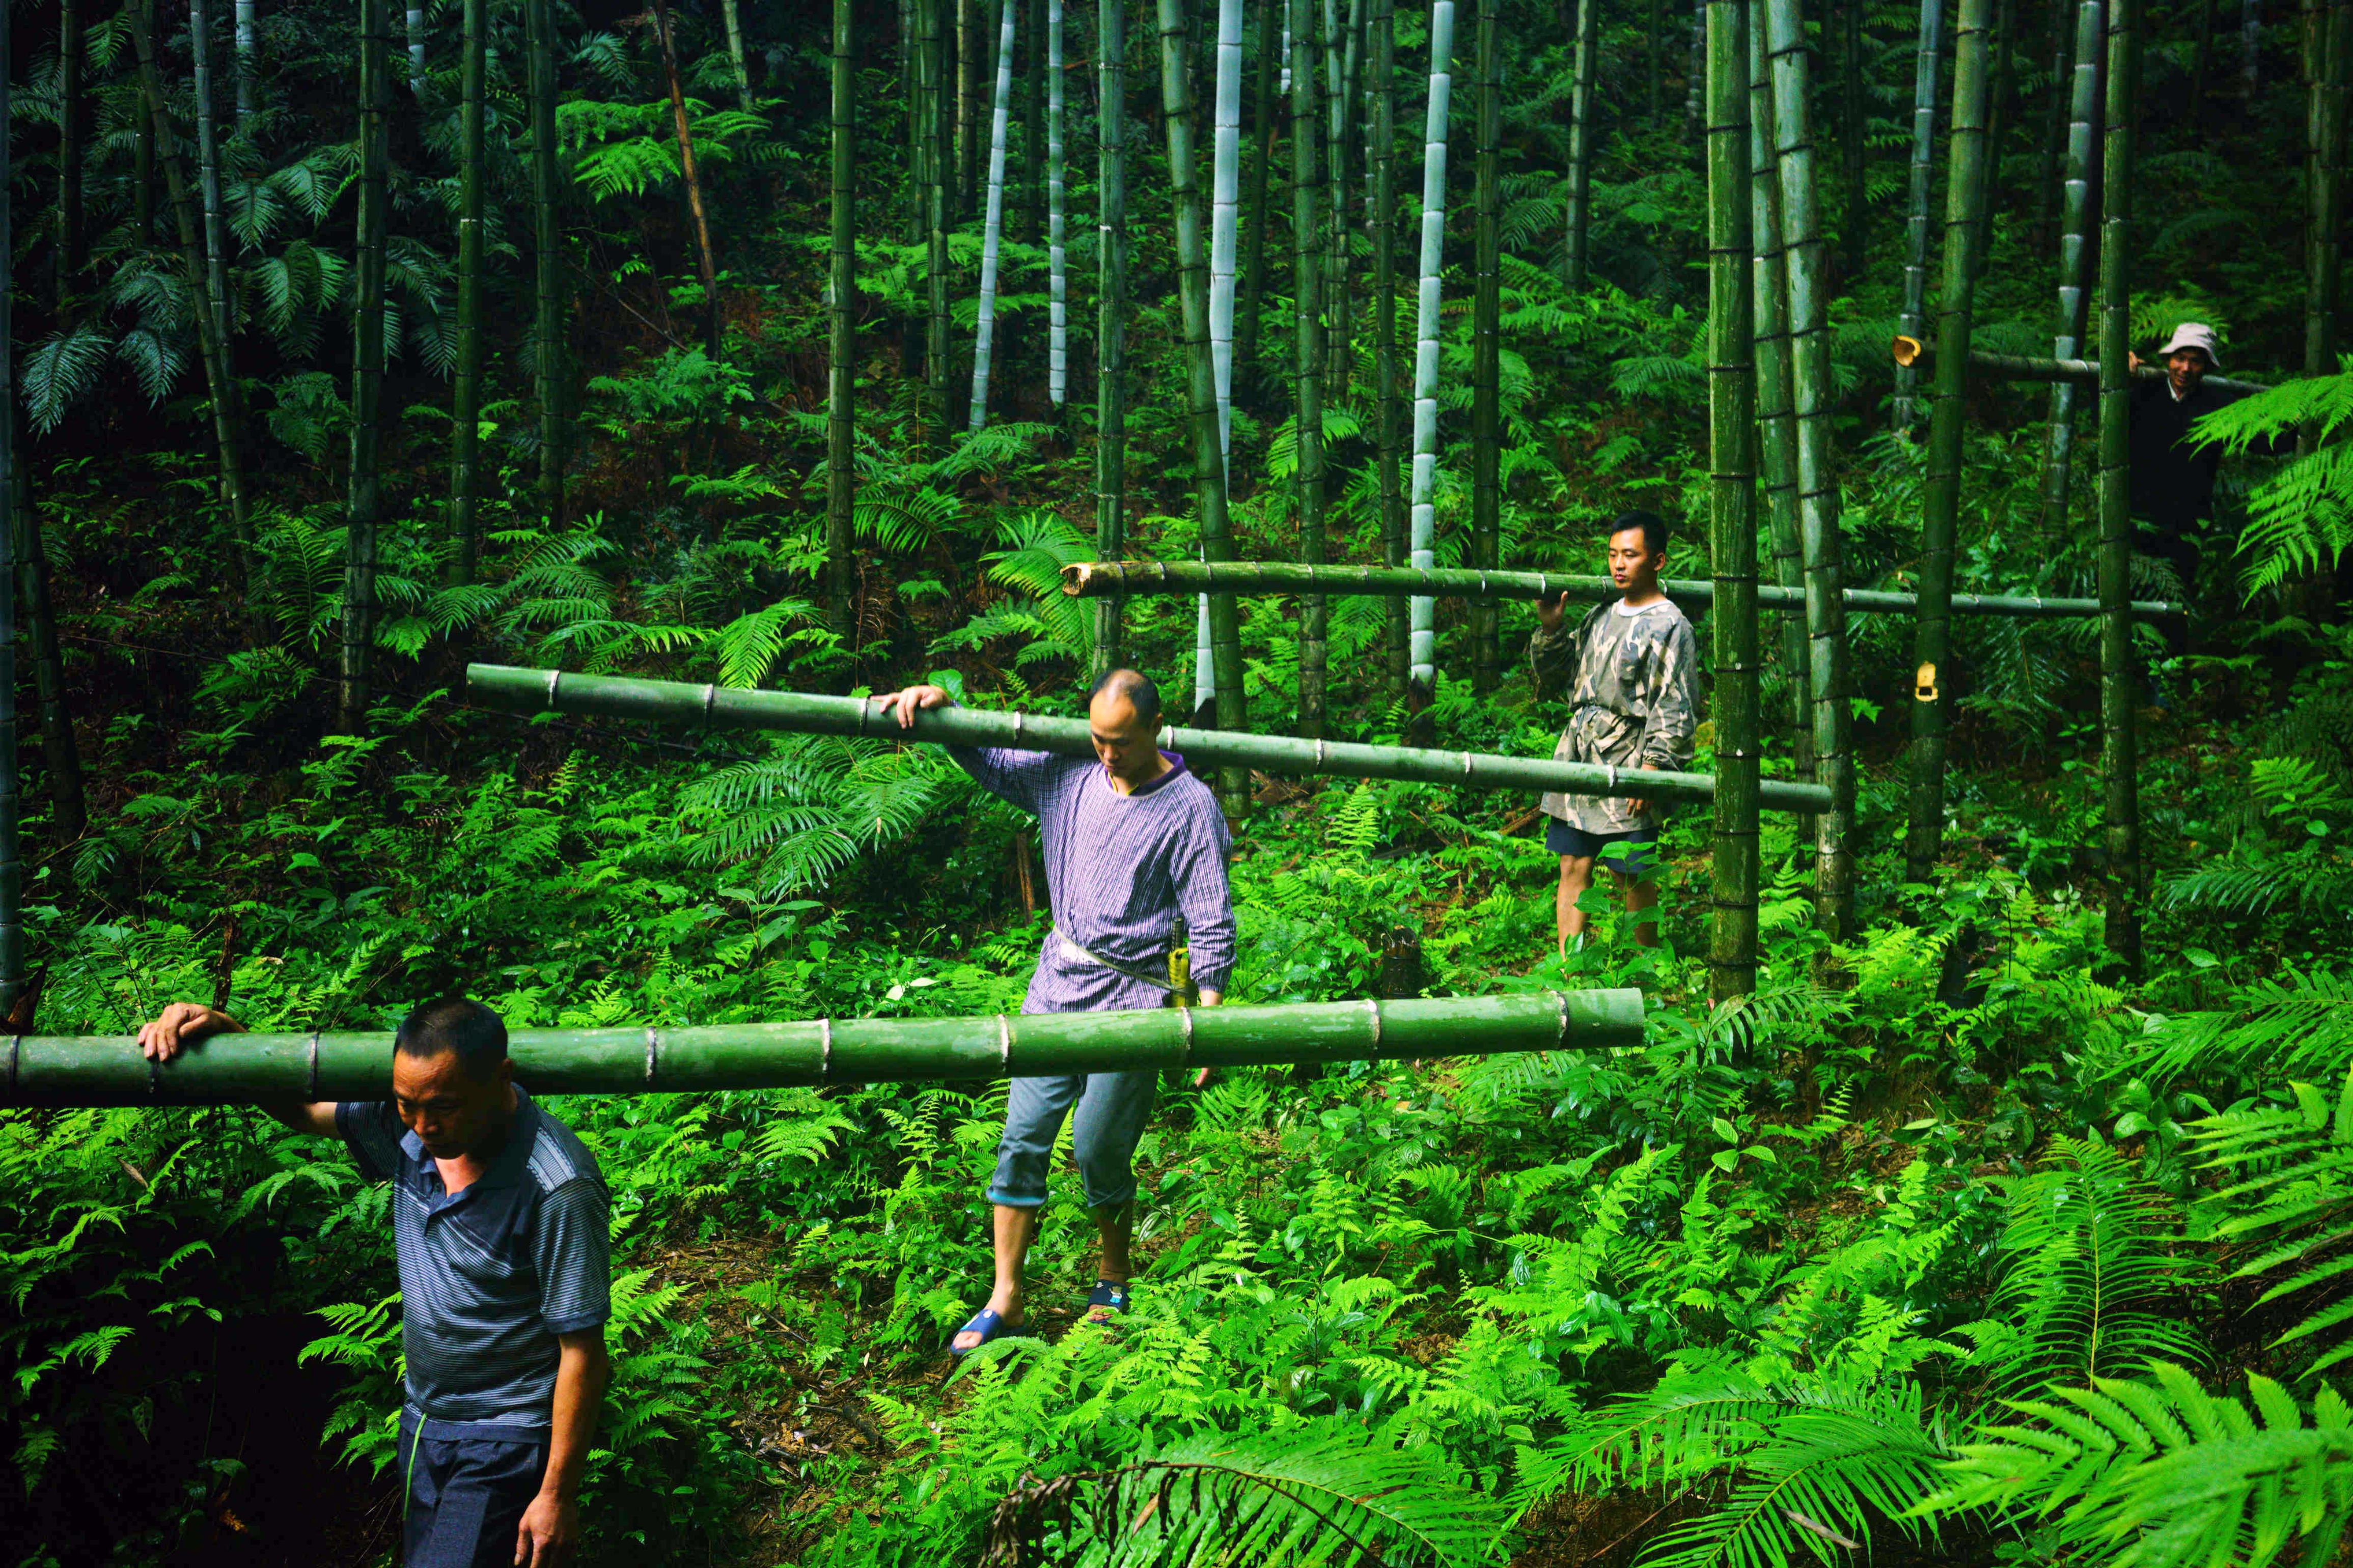 「以竹代塑」目前主要挑战在于，从竹子的采收到竹制品的加工、制作仍高度仰赖人力。新华社